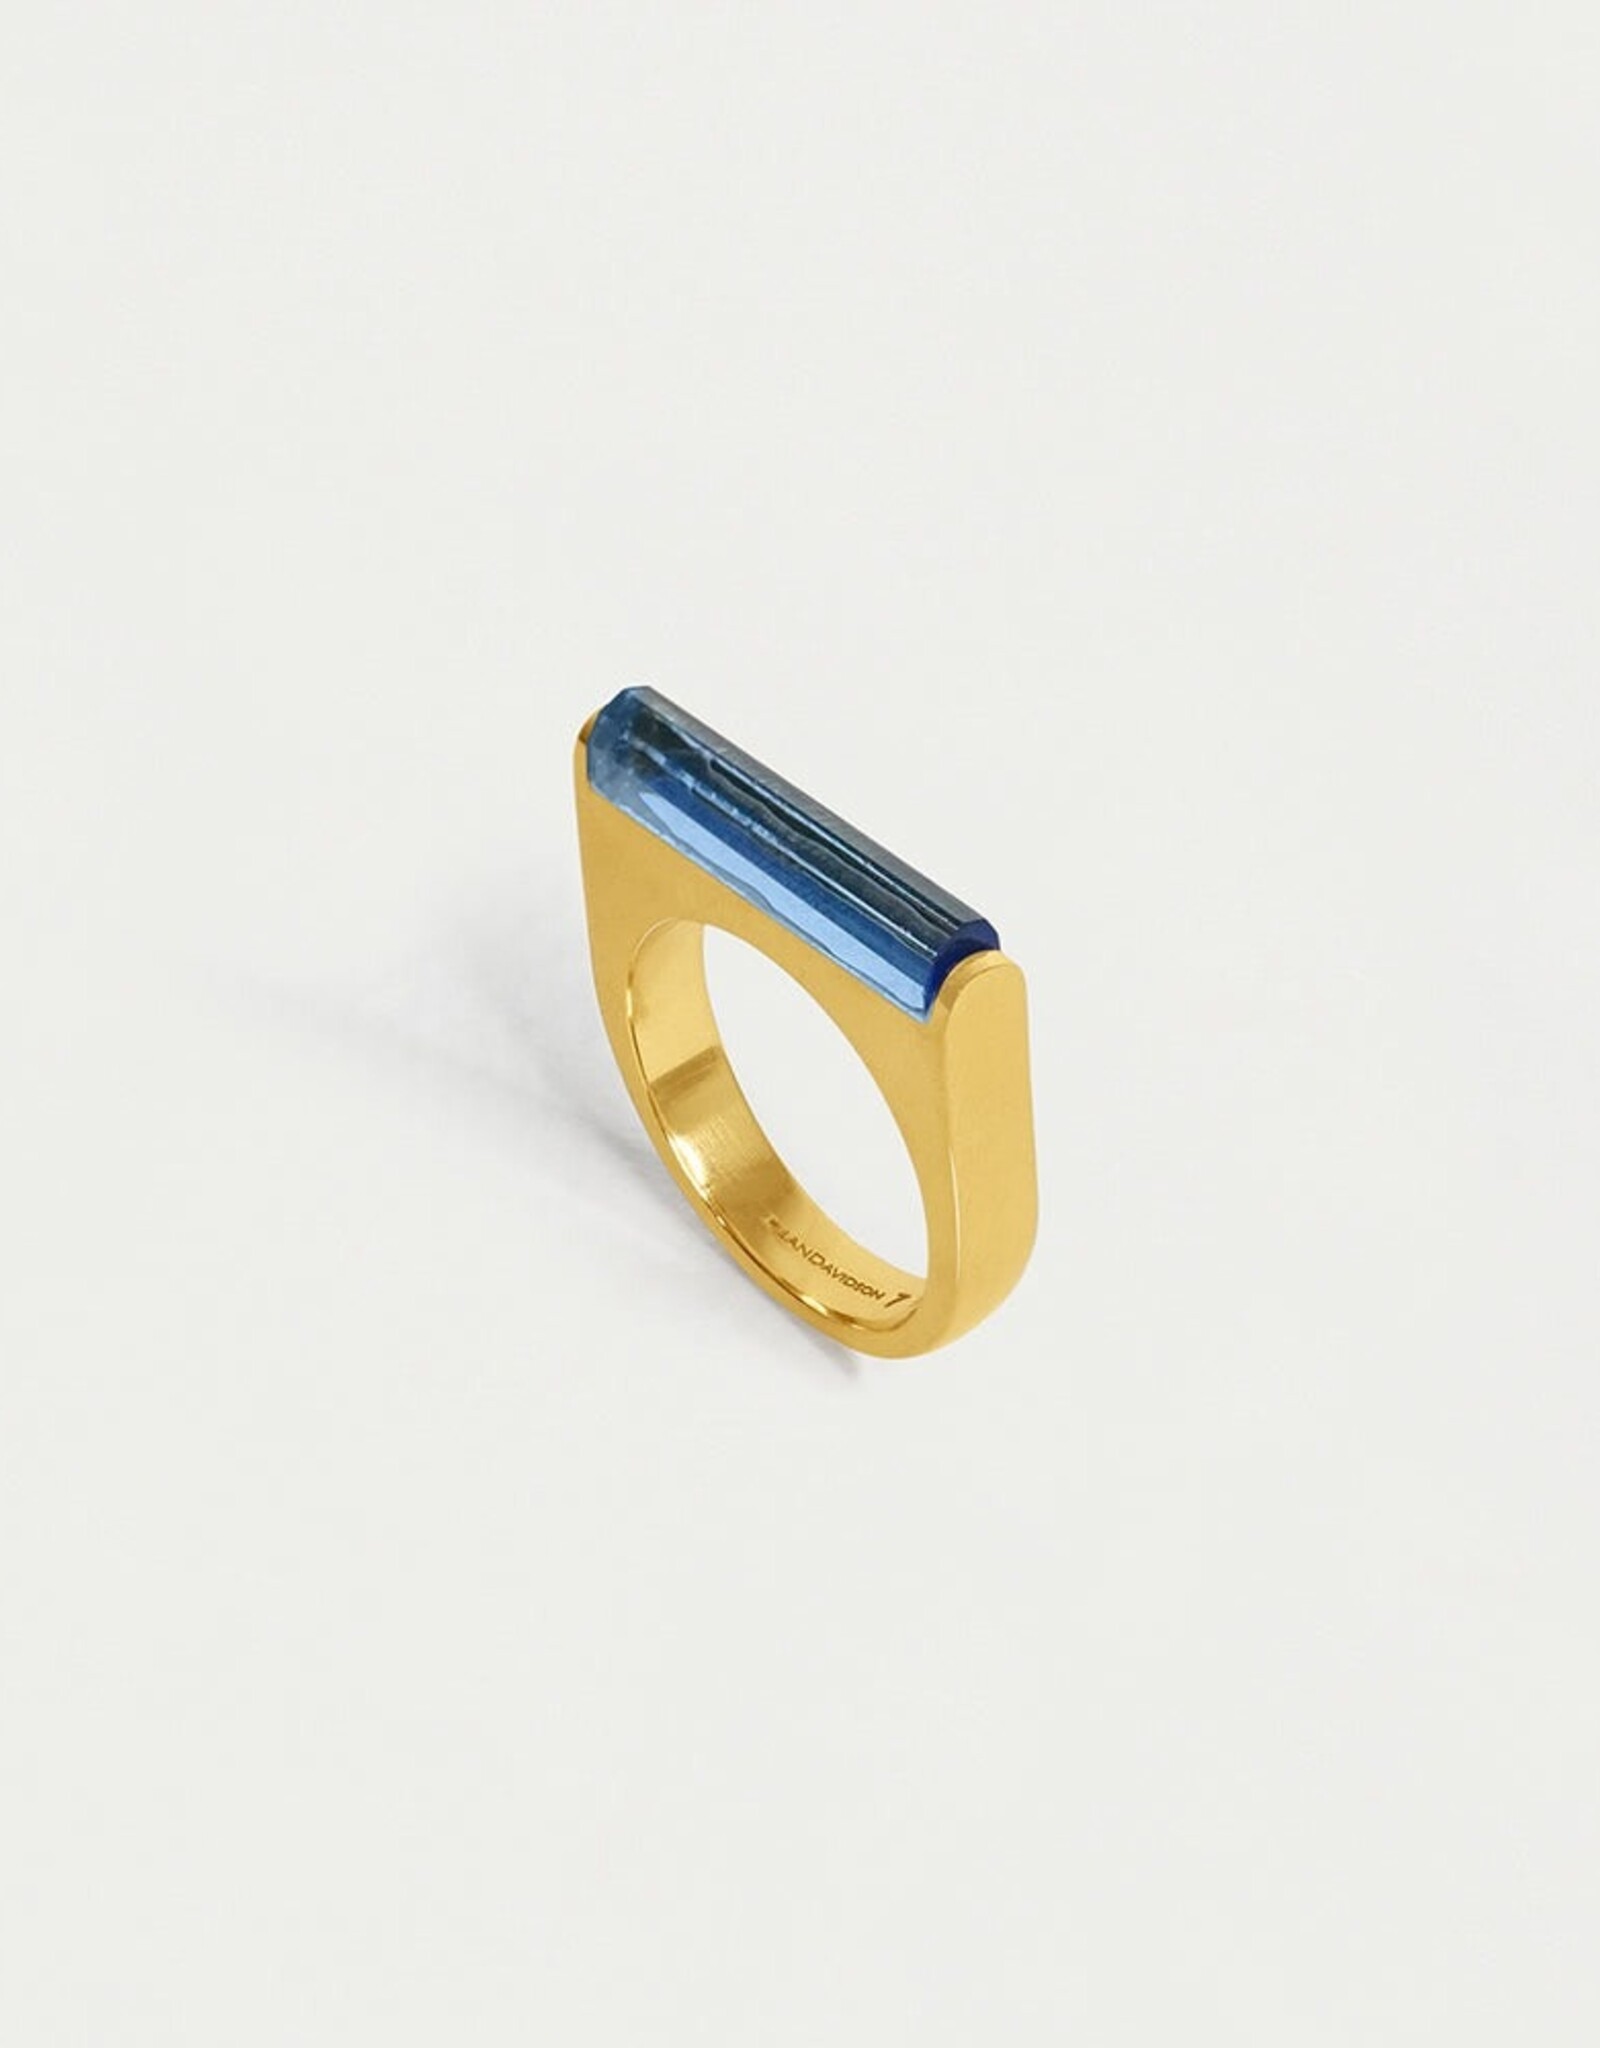 Dean Davidson Revival Gemstone Bar Ring, Denim Blue and Gold